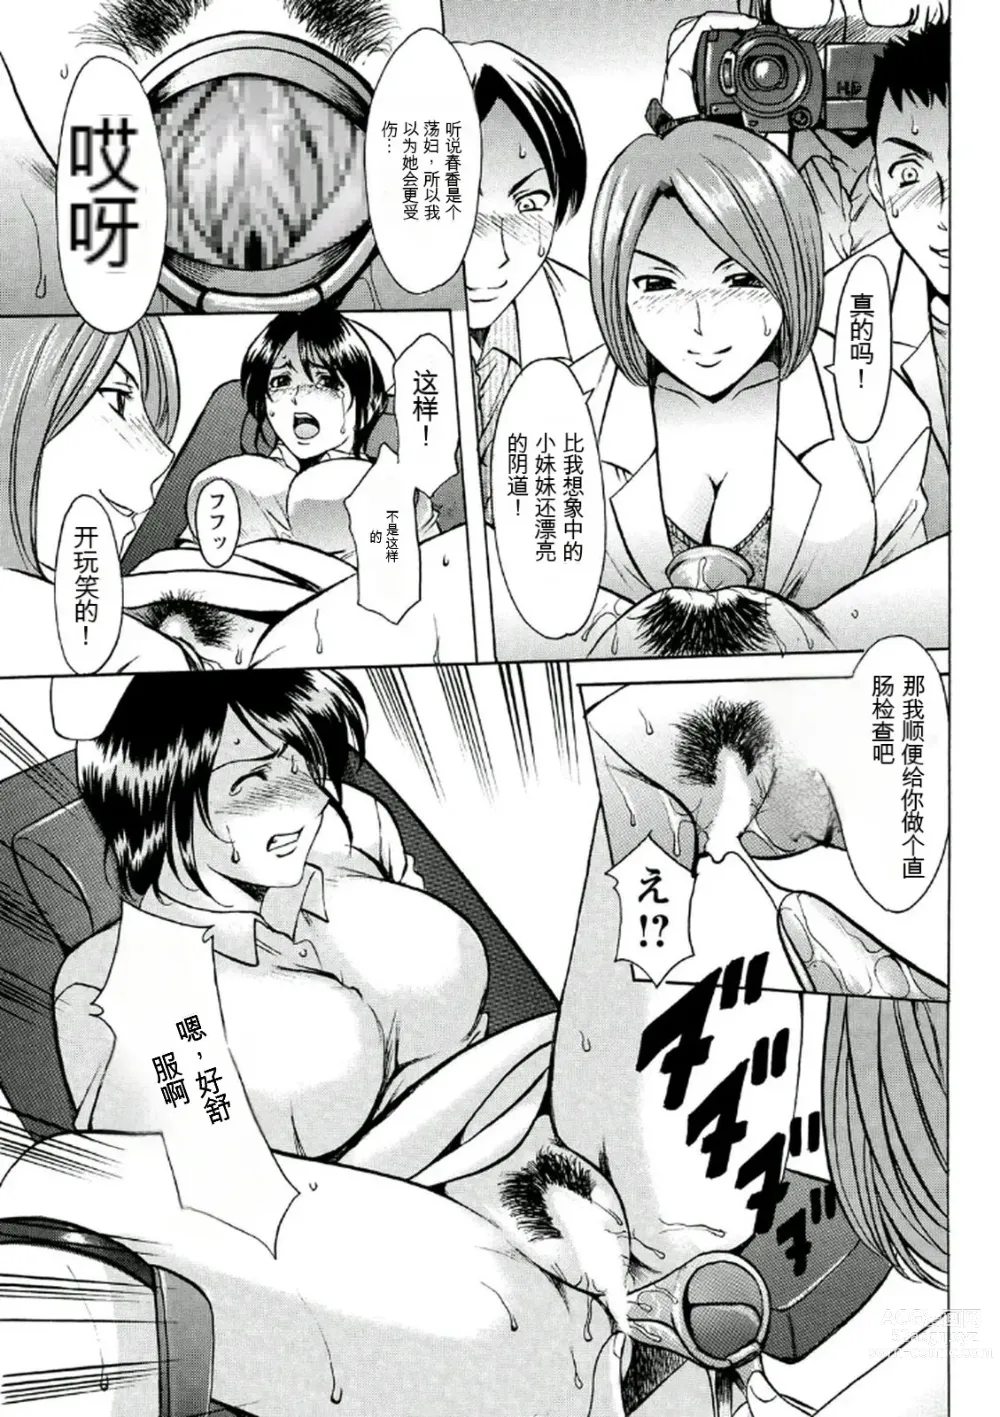 Page 35 of manga Chijoku Byoutou -Hakui no Datenshi-